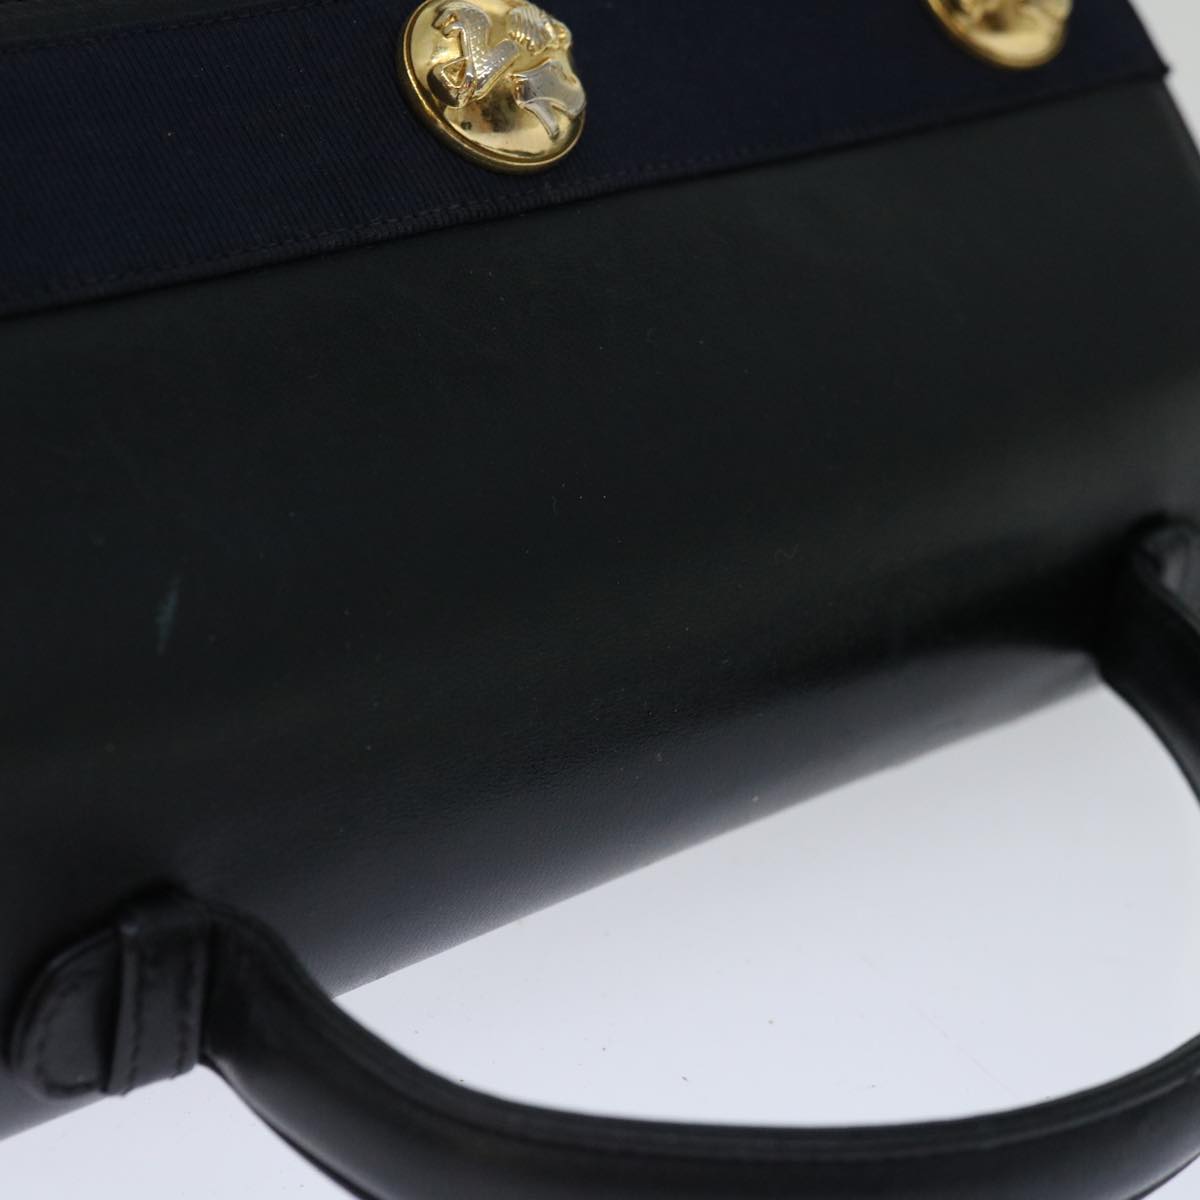 Salvatore Ferragamo Hand Bag Leather Black Auth hk1172